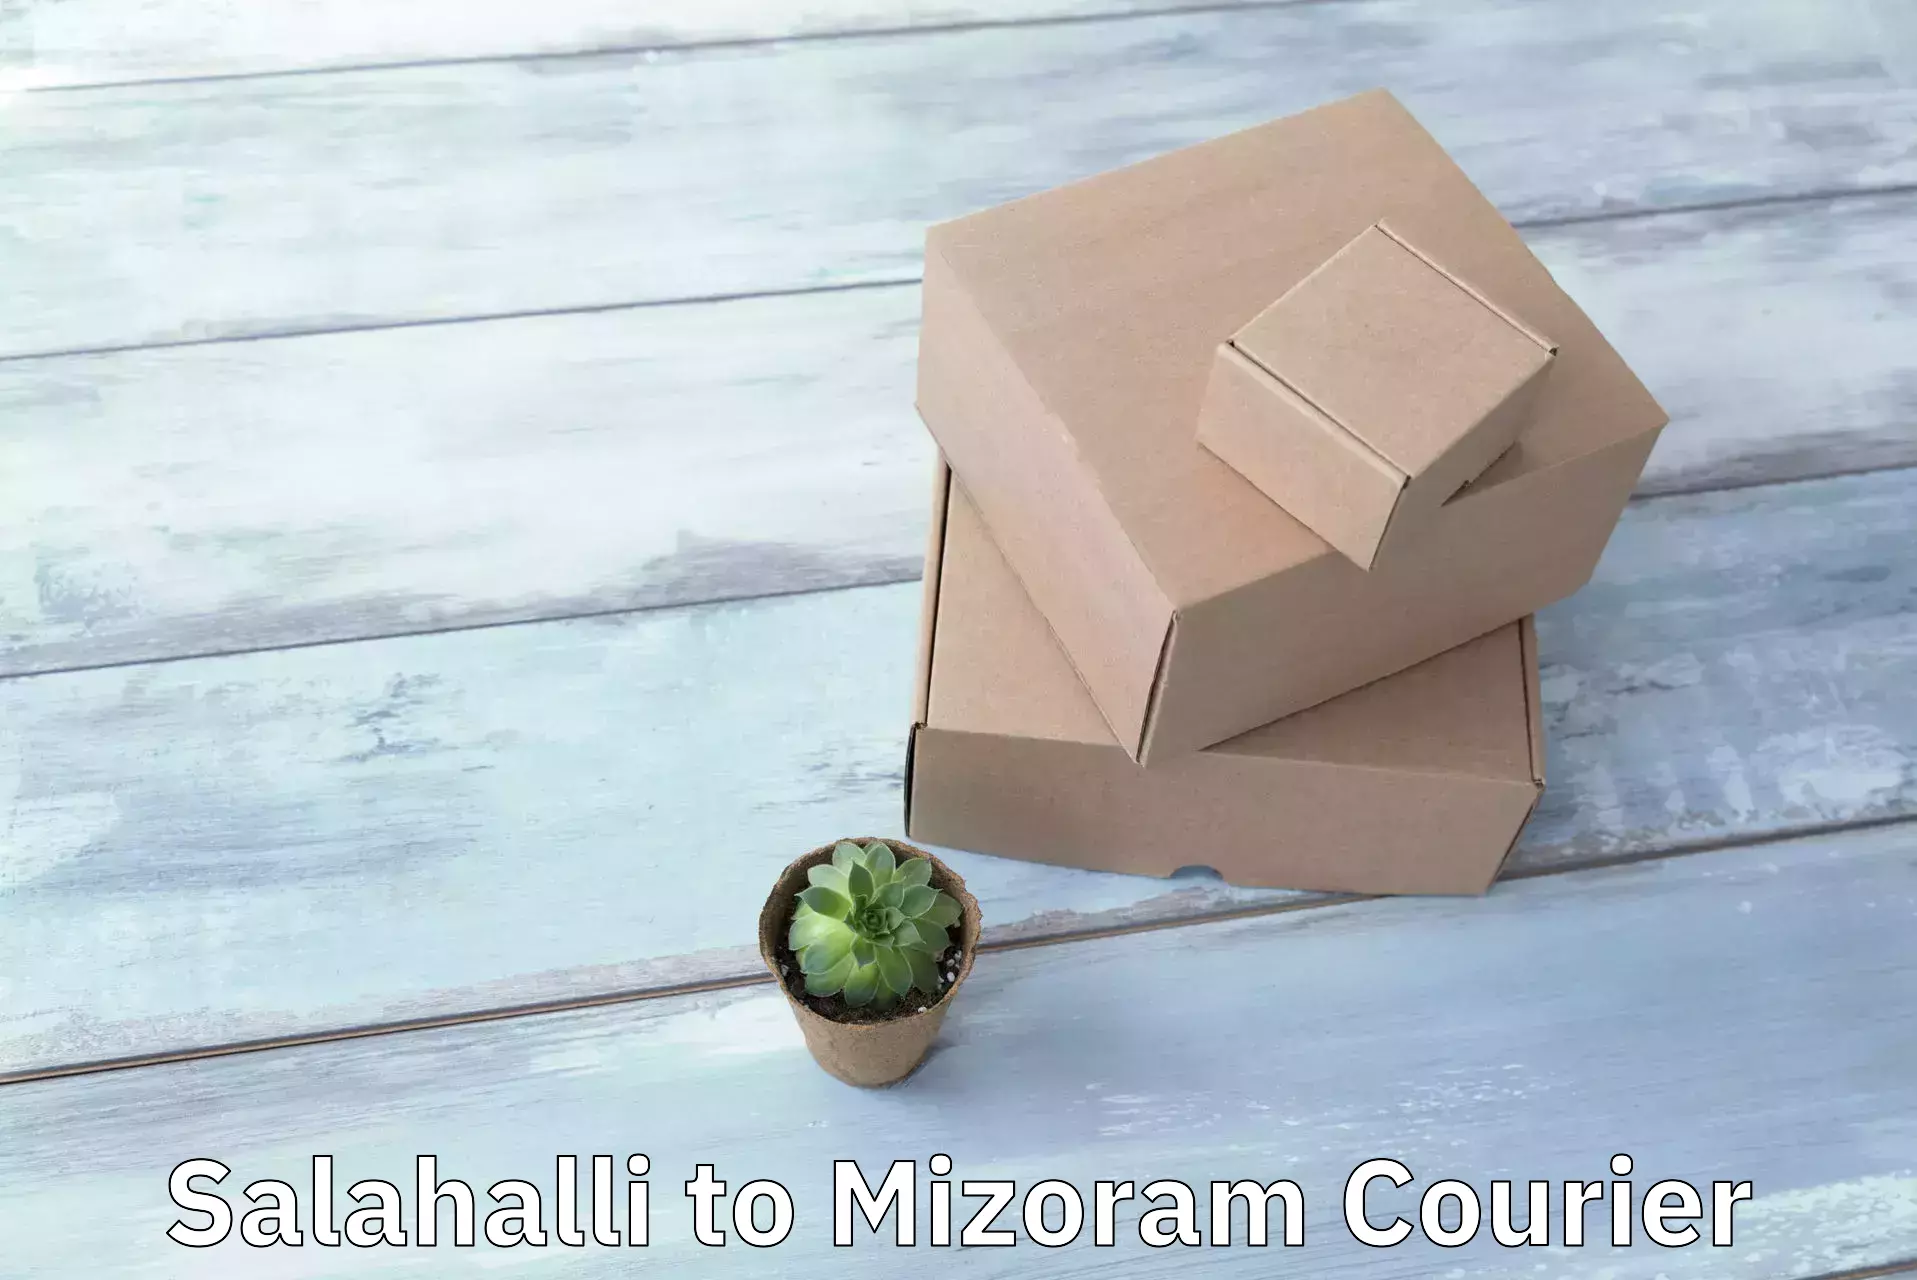 Efficient parcel transport Salahalli to Mizoram